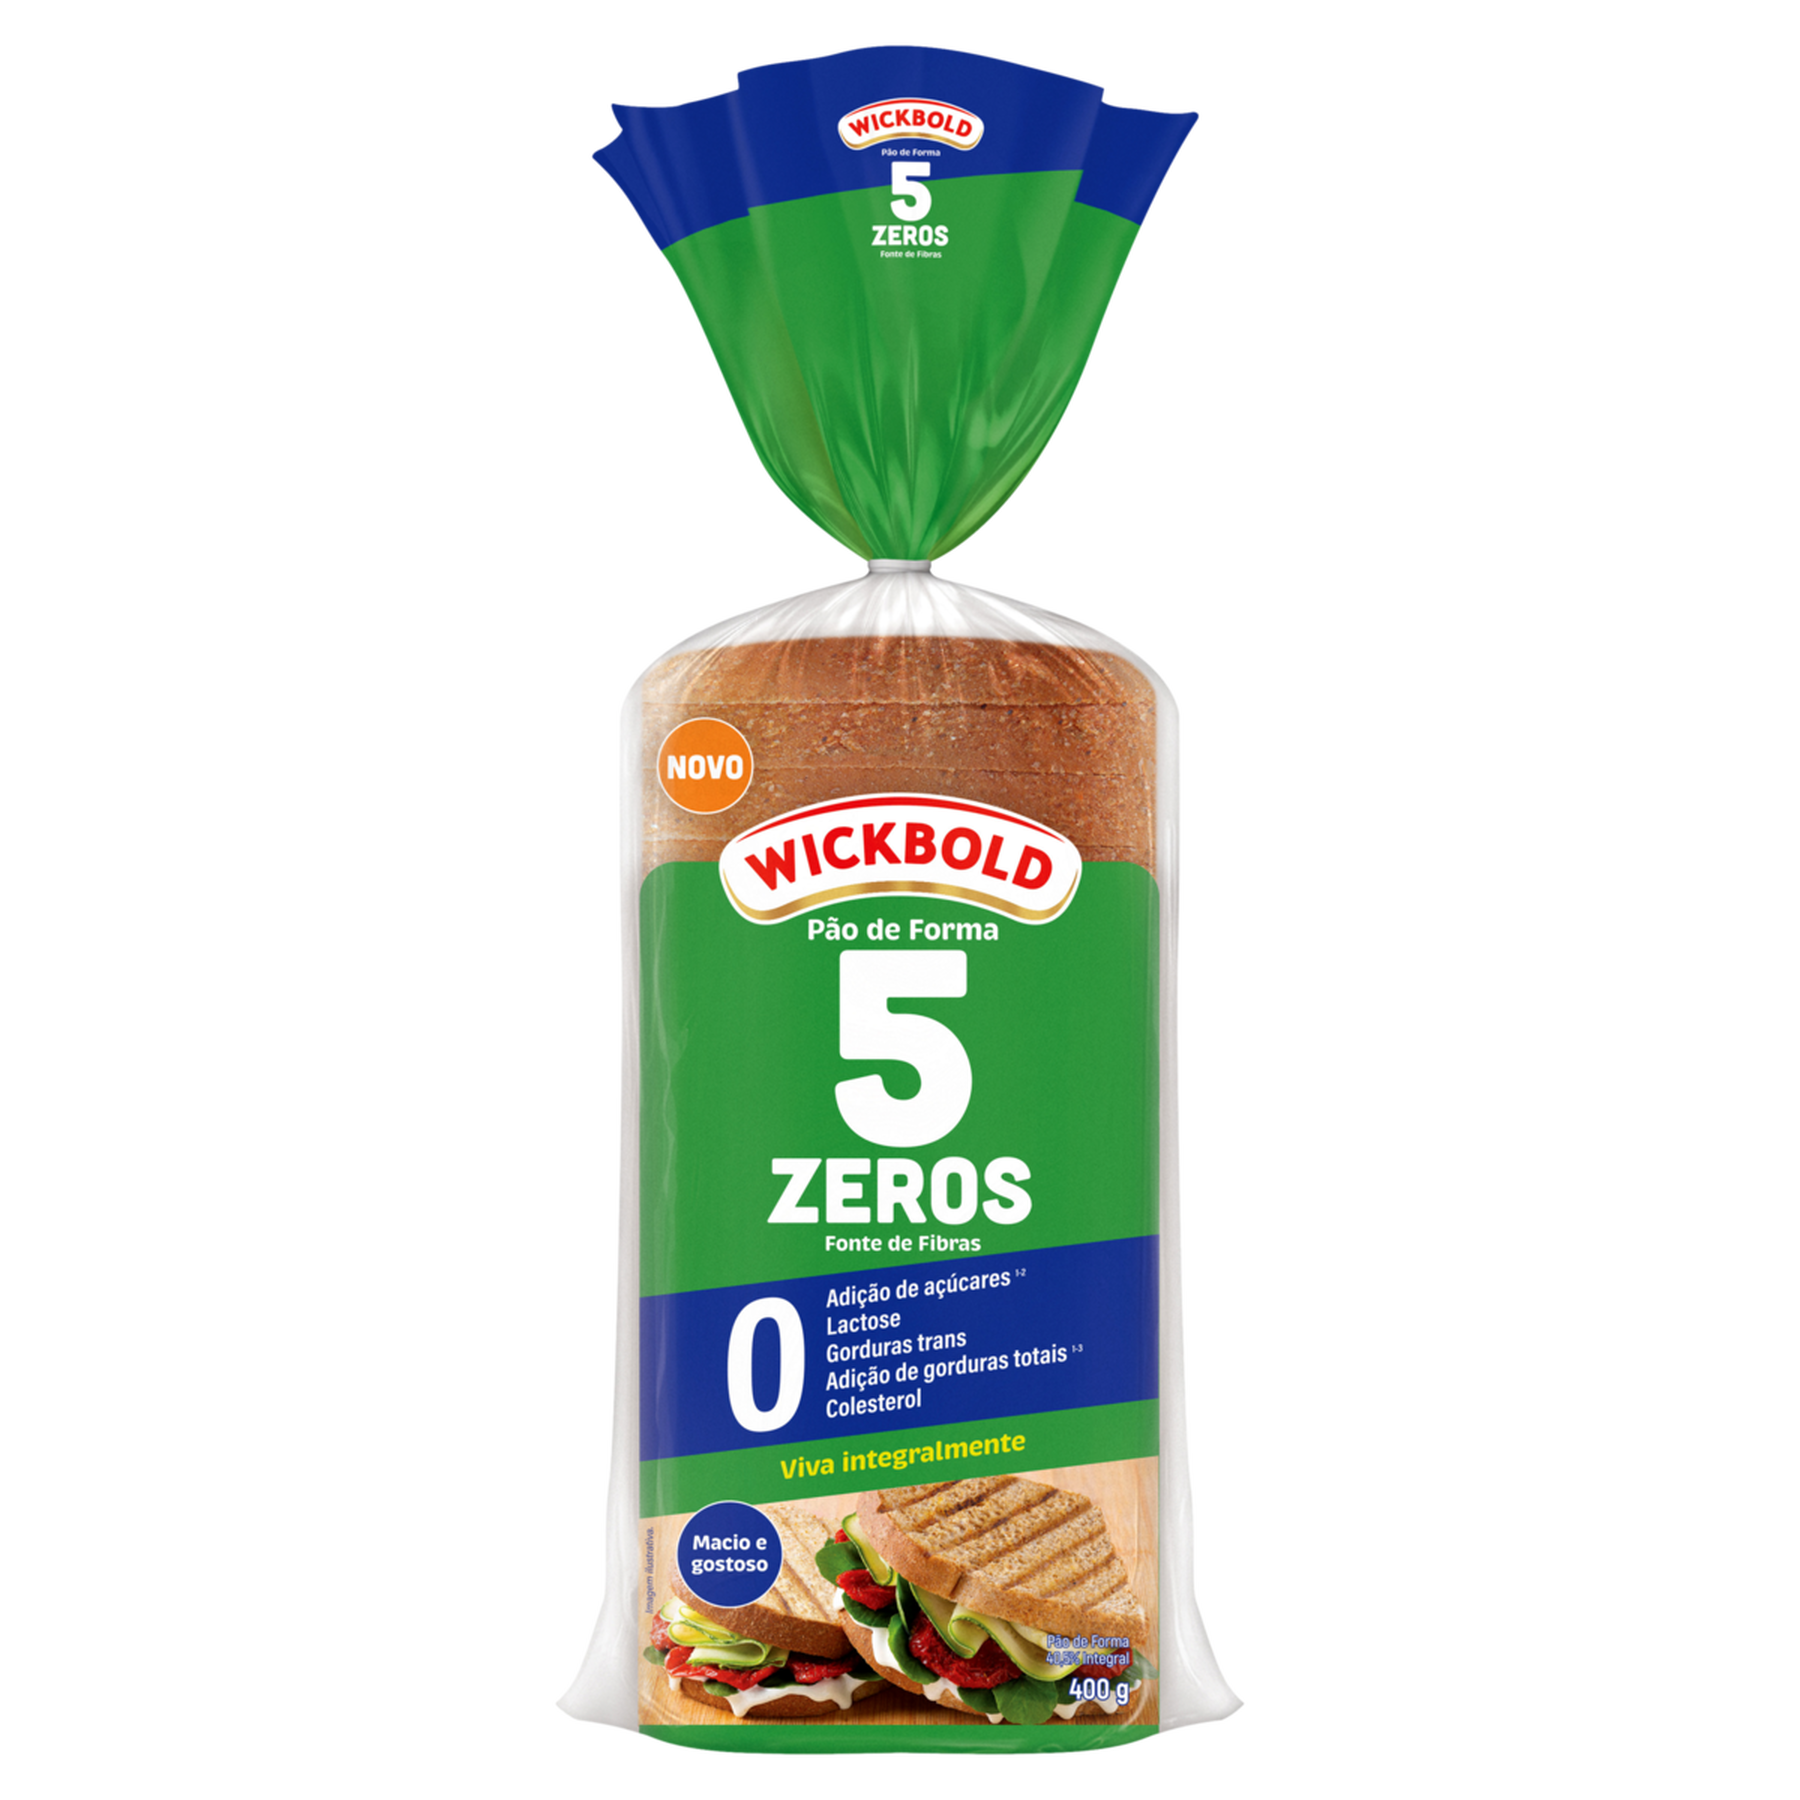 Pão de Forma Zero Lactose 5 Zeros Wickbold Pacote 400g